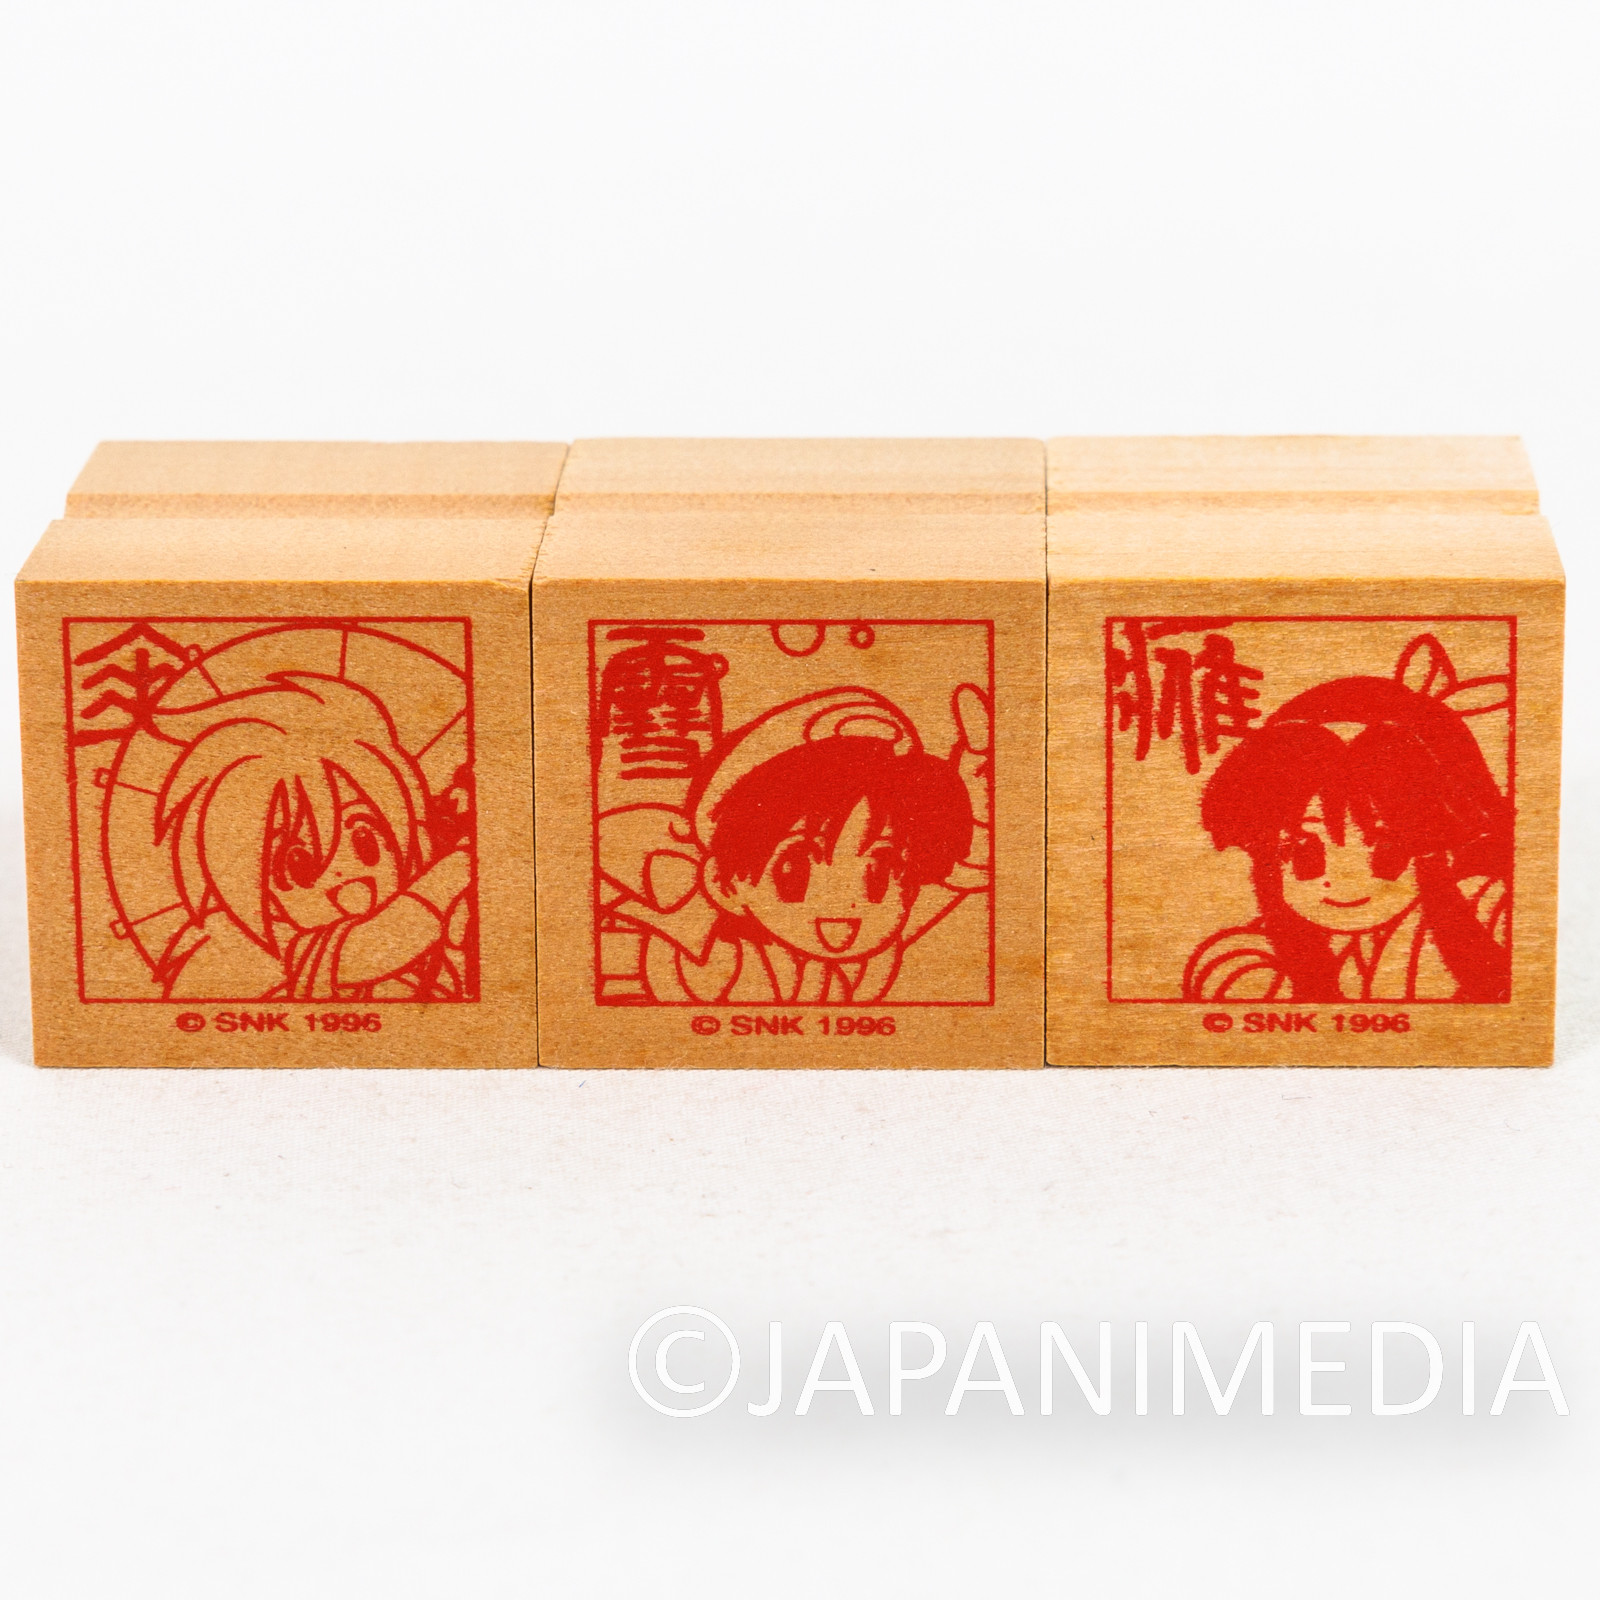 Samurai Shodown Mini Stamp 3pc Set / Nakoruru Rimururu Shizumaru Hisame